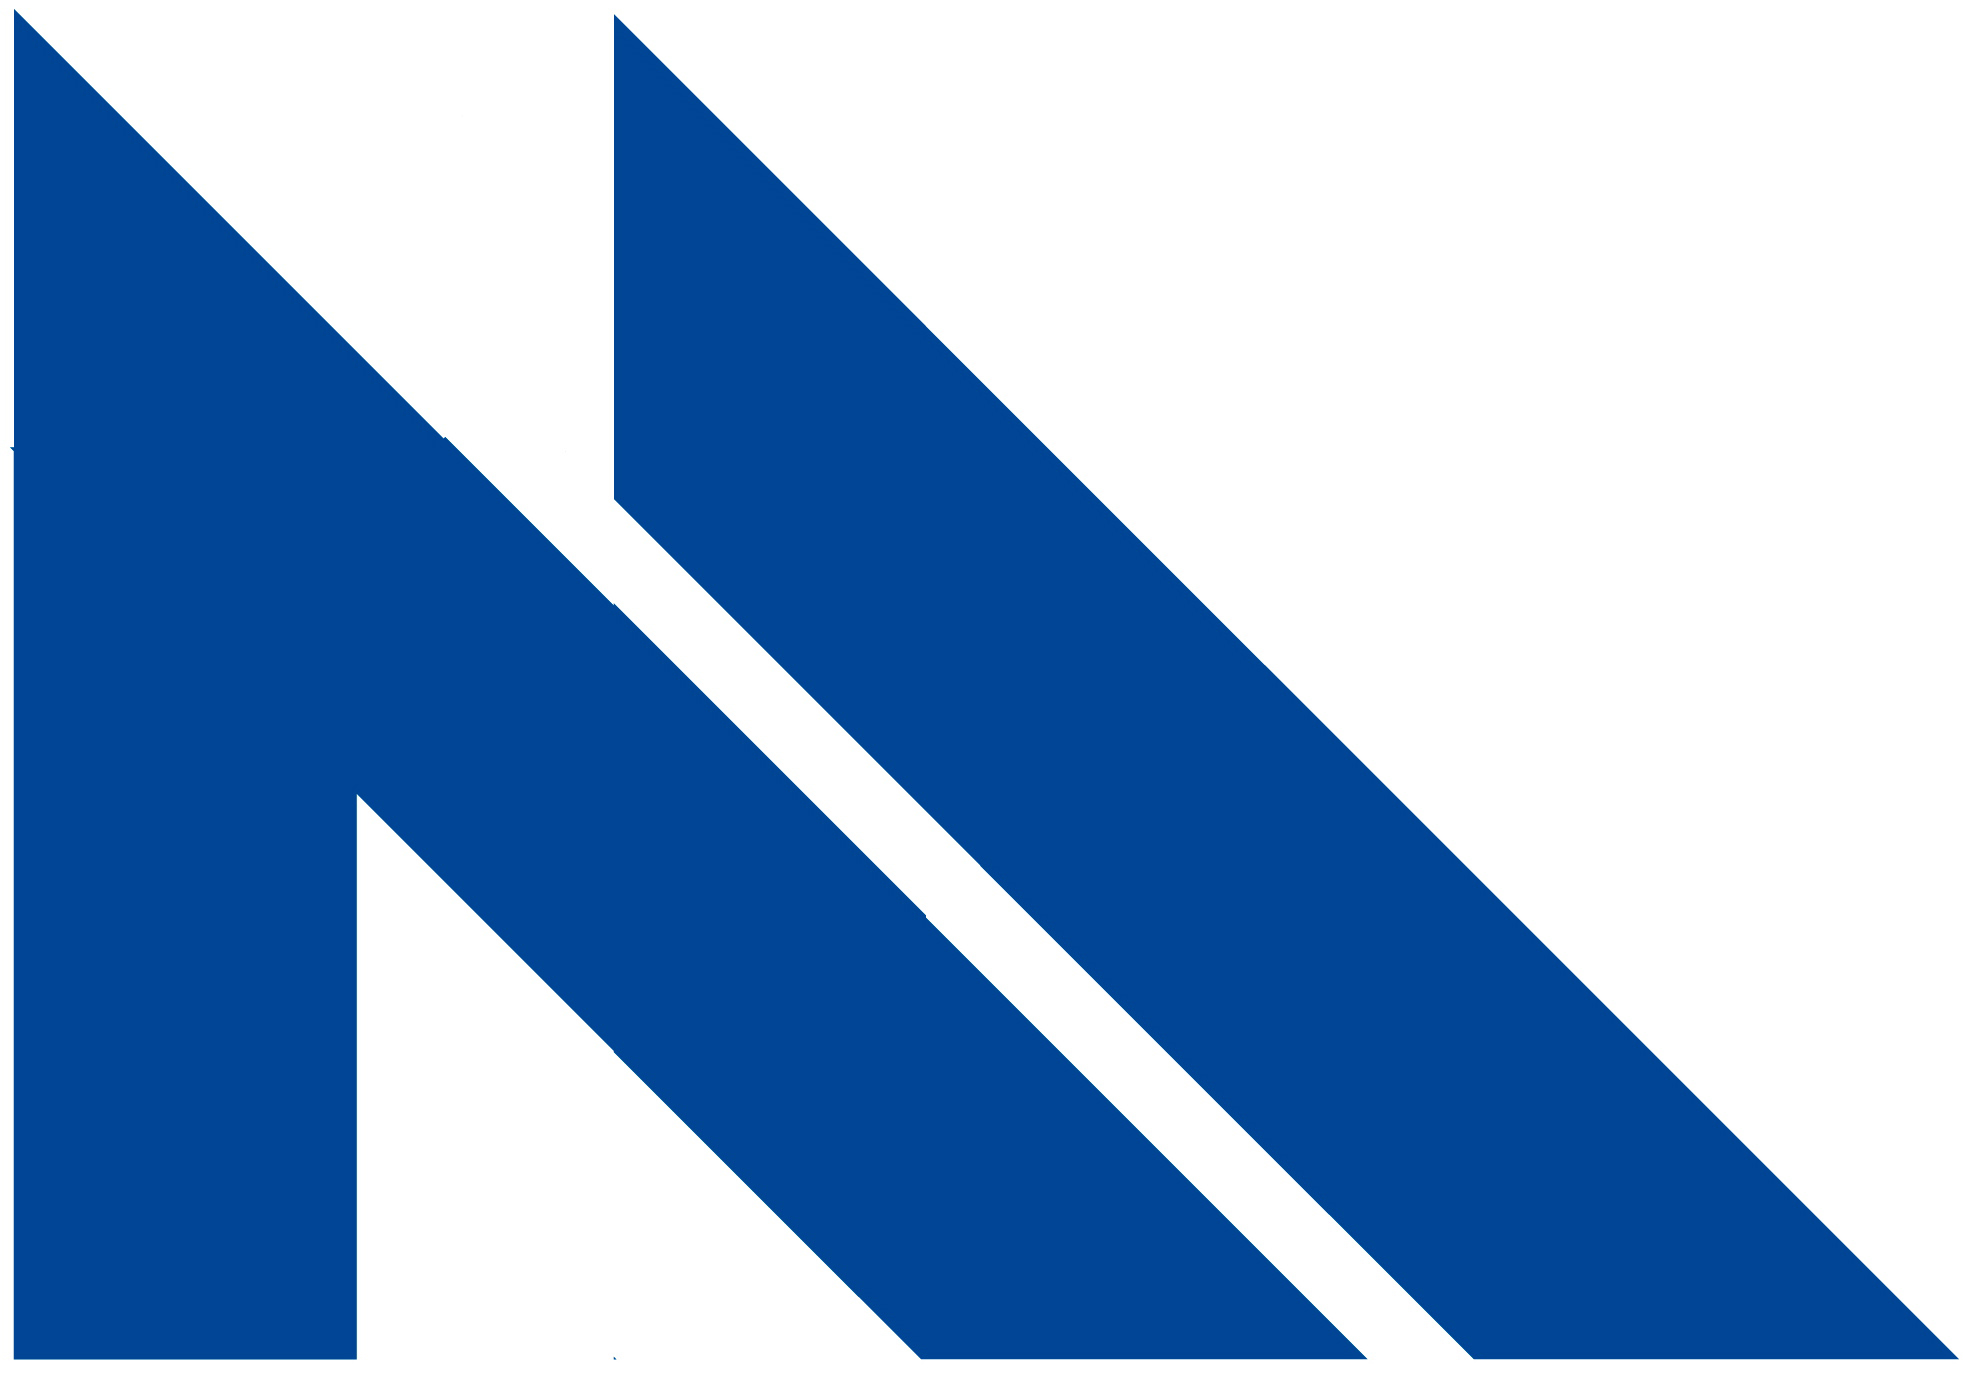 Finished blue logo with white background.